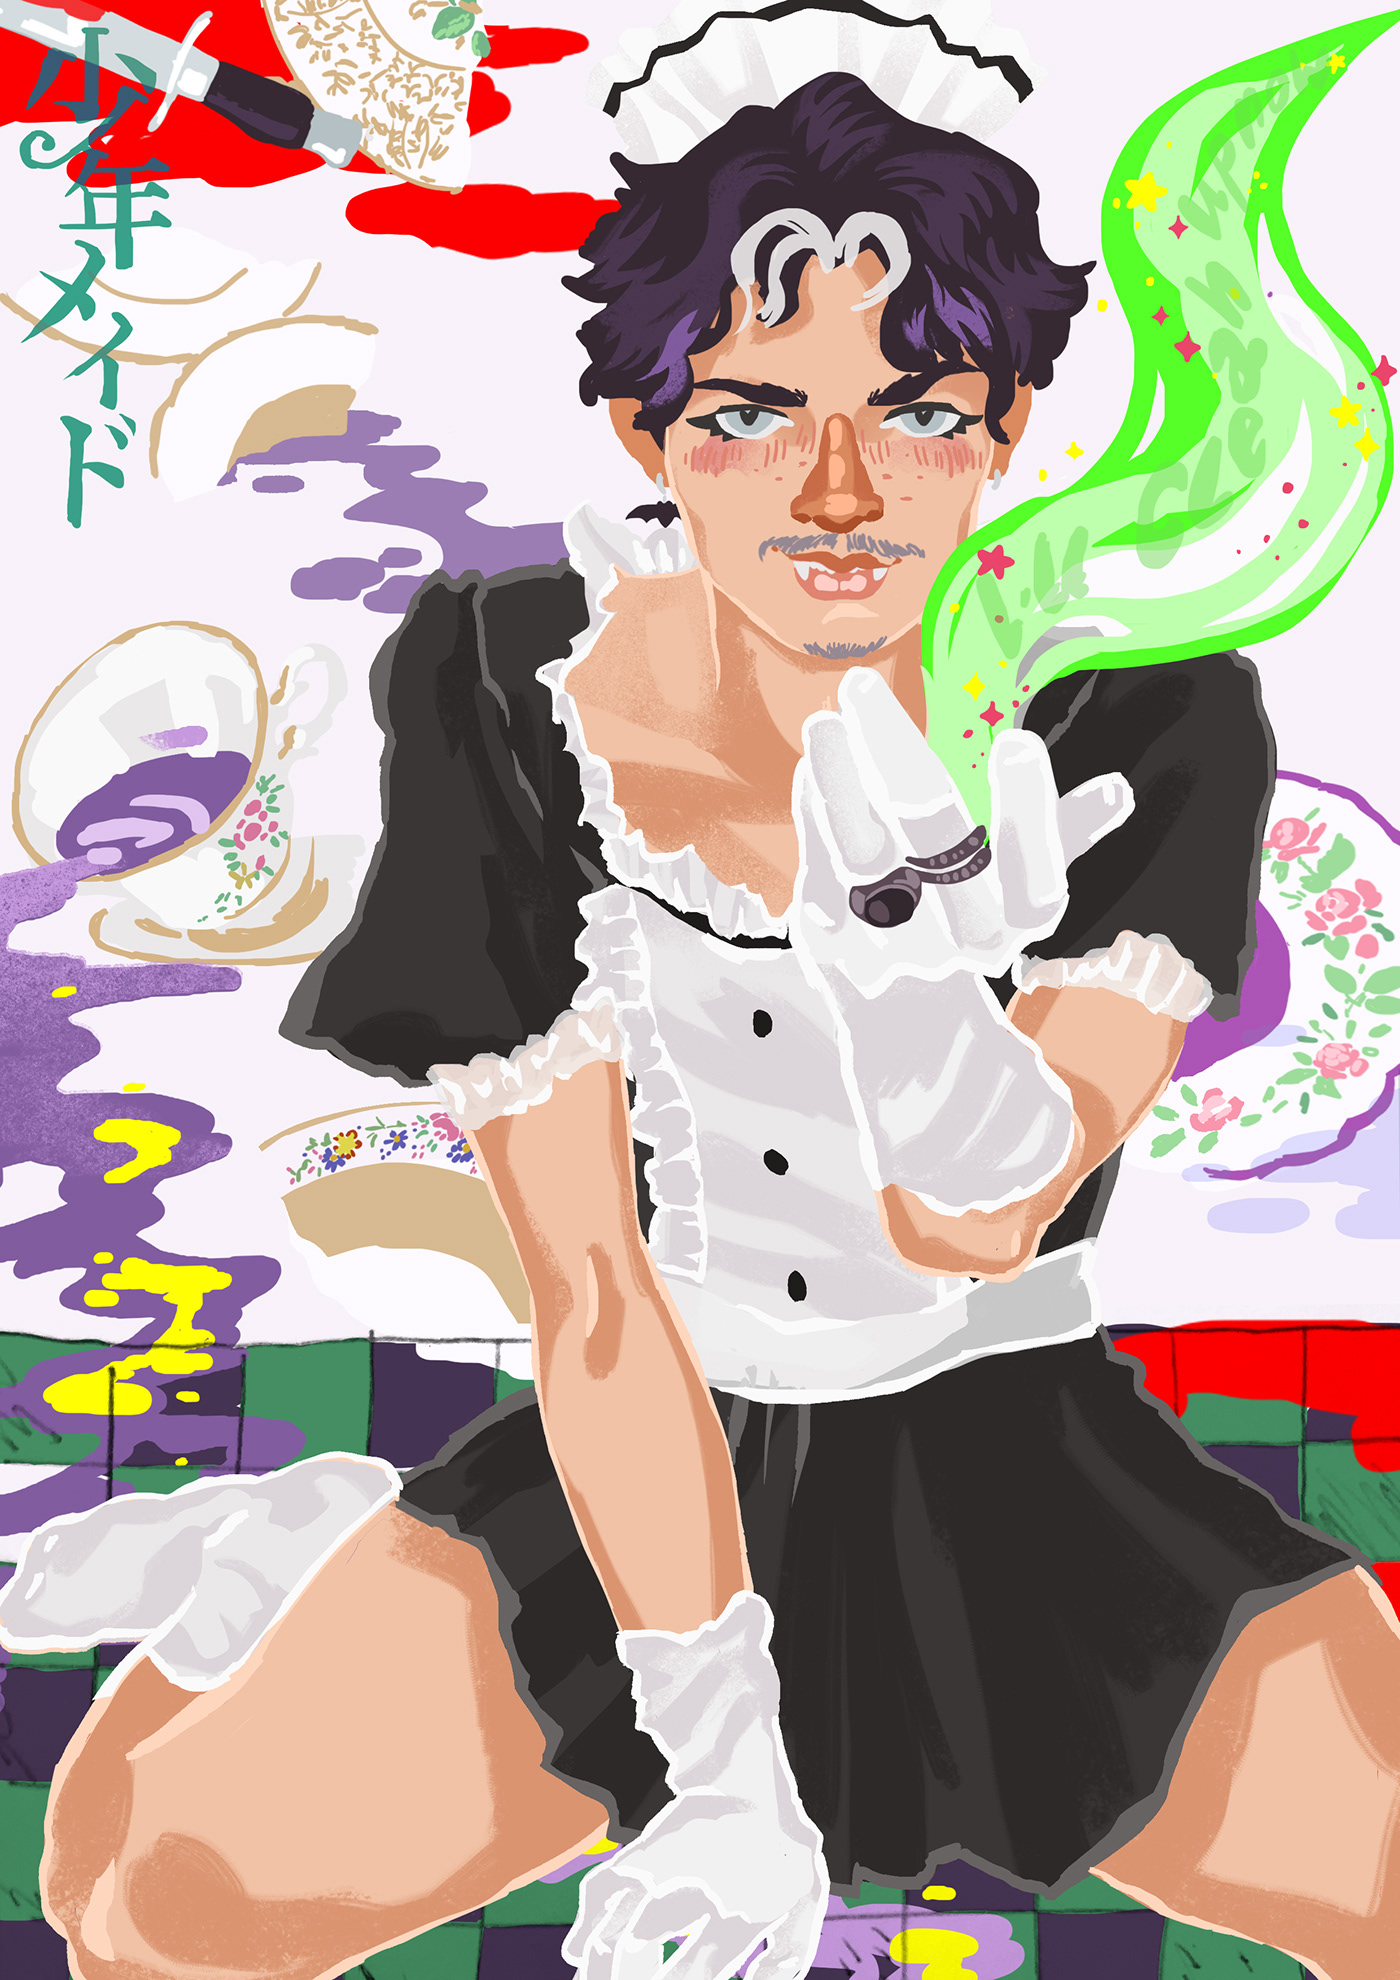 art cleaner feminism heterosexual homosexual Magic   maid murder Picture TikTok